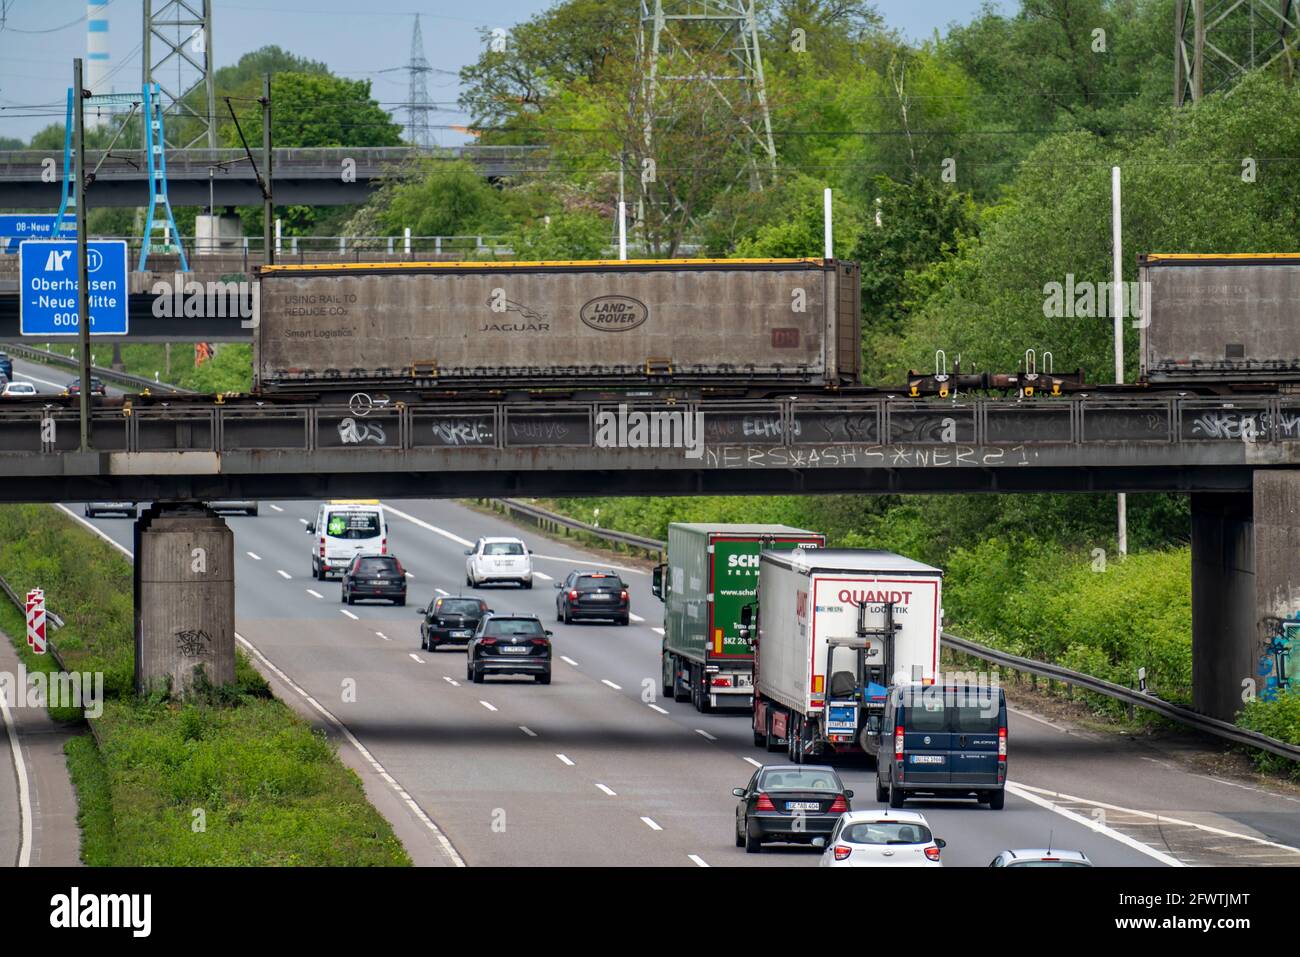 Tráfico de camiones en la autopista A42, Emscherschnellweg, puente ferroviario con tren de mercancías, Oberhausen, NRW, Alemania Foto de stock